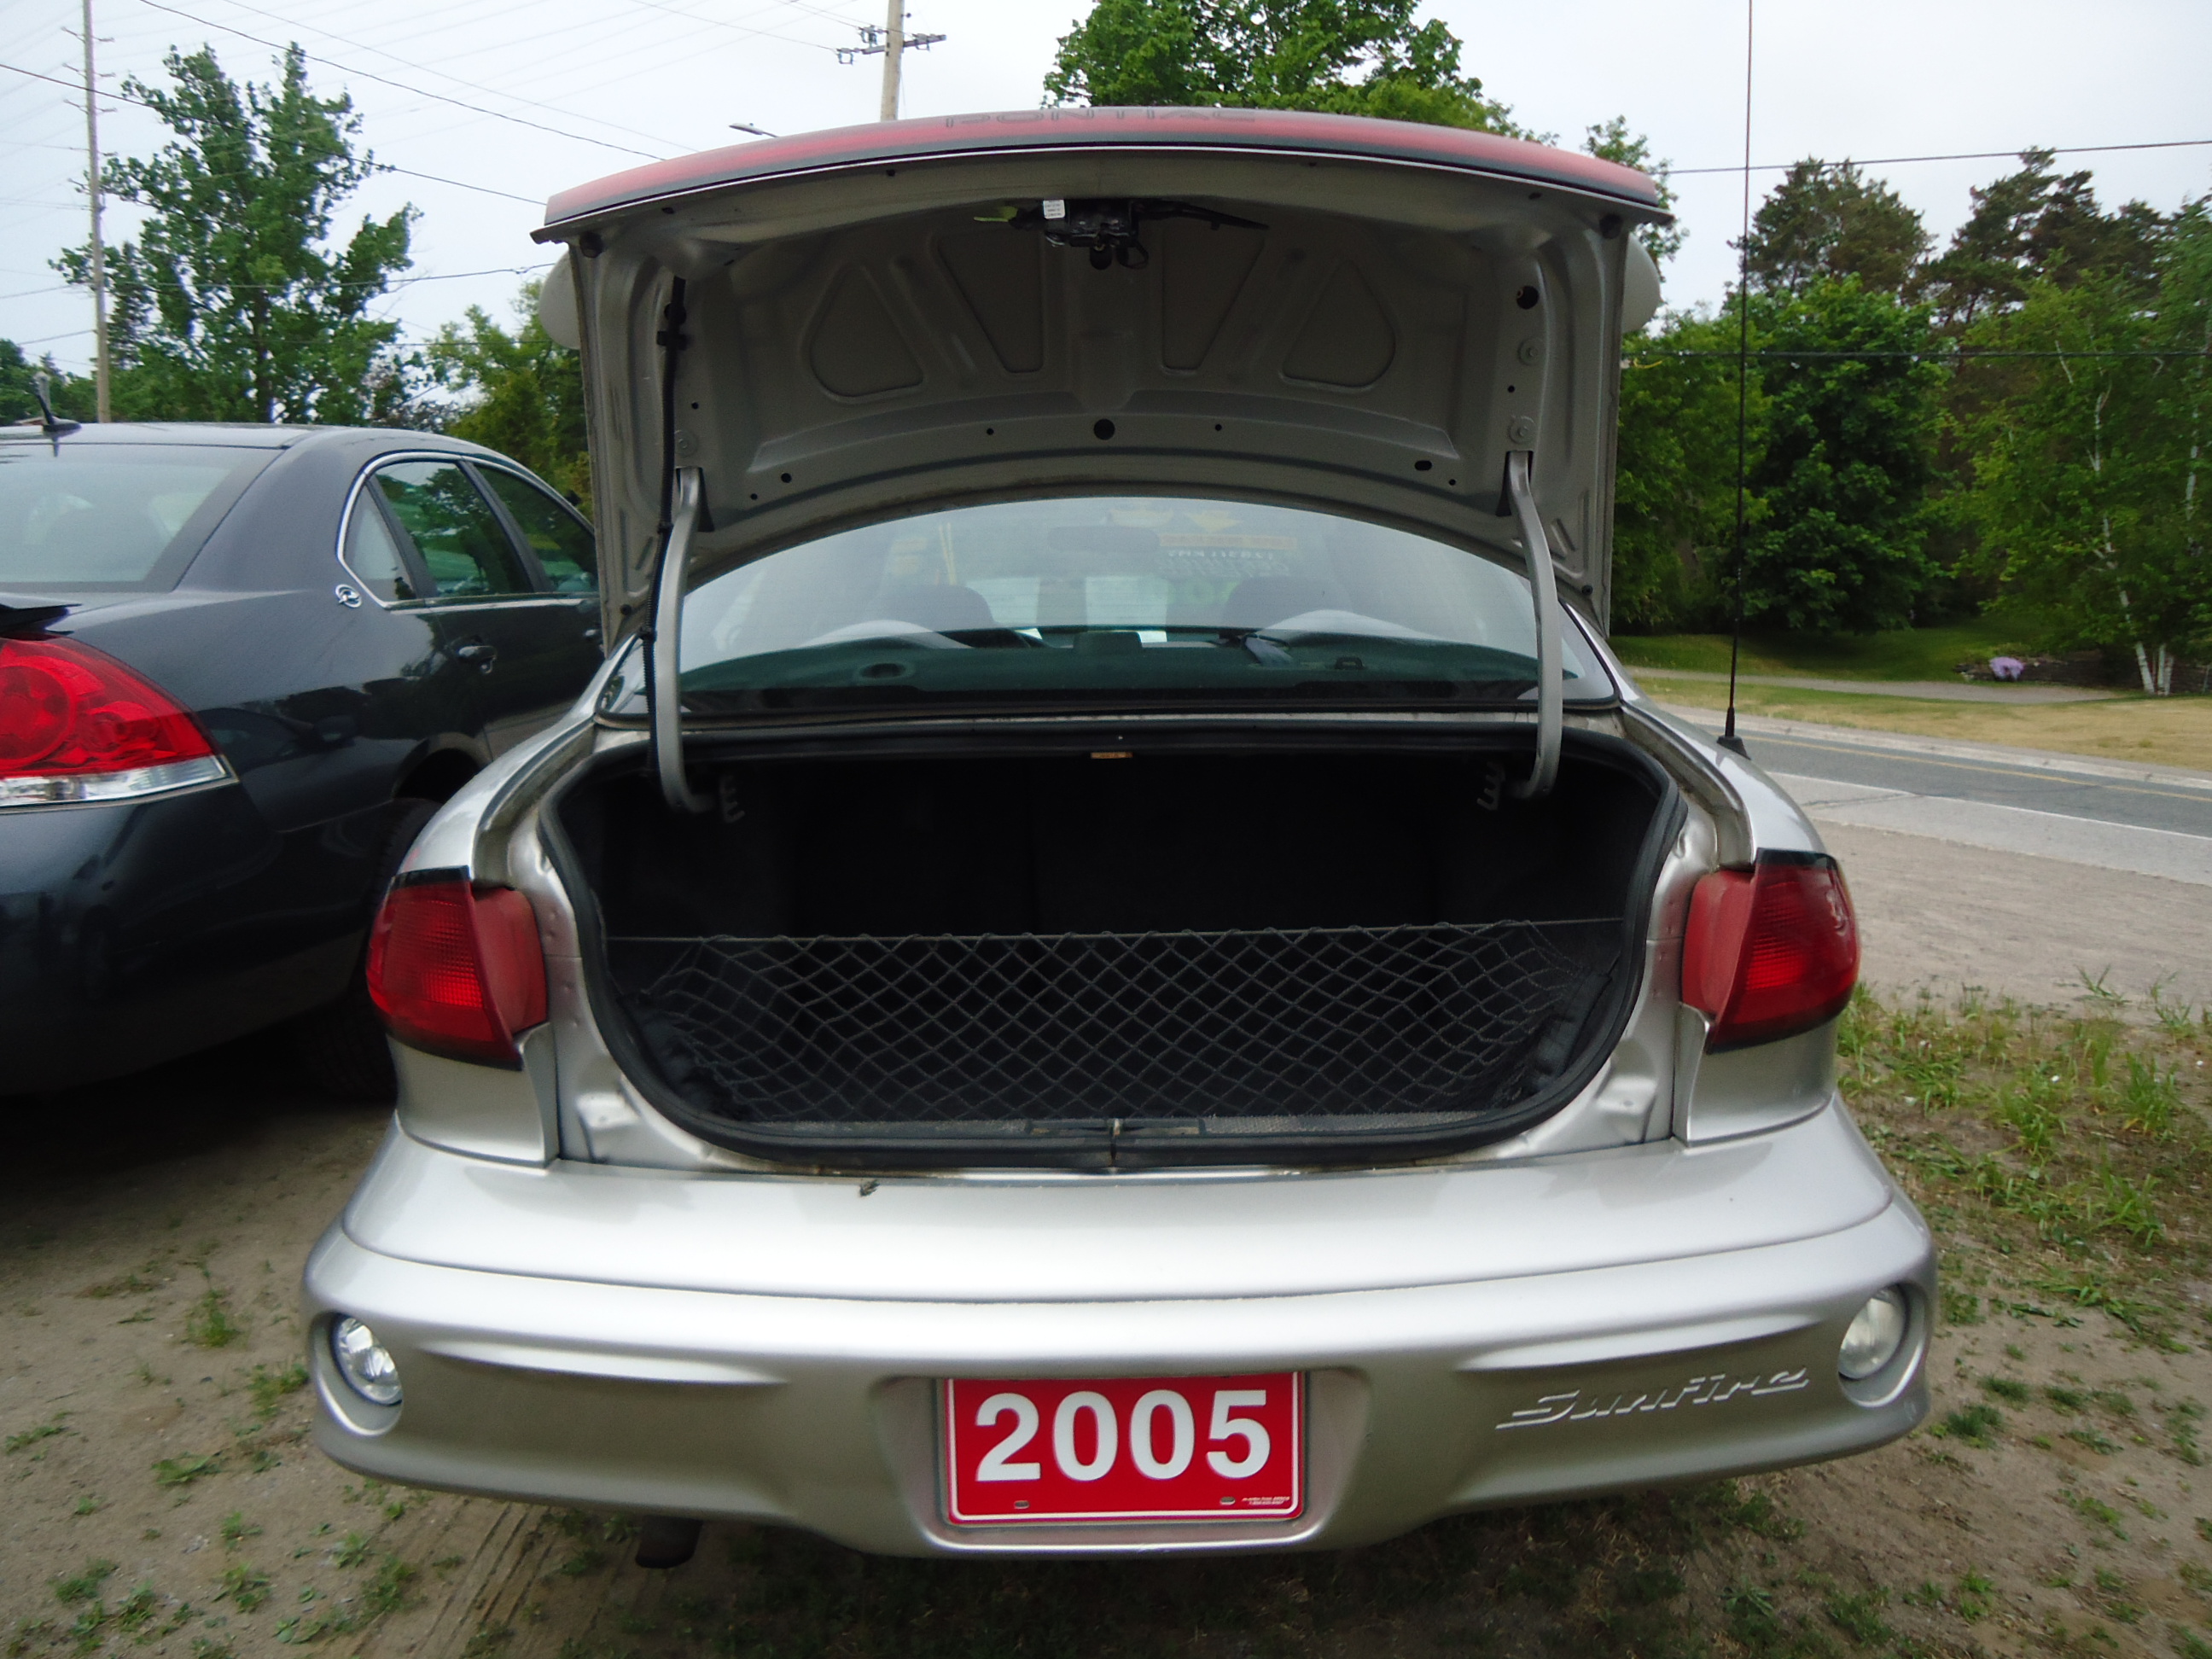 2005 Pontiac Sunfire Slx Interior Bob Currie Auto Sales